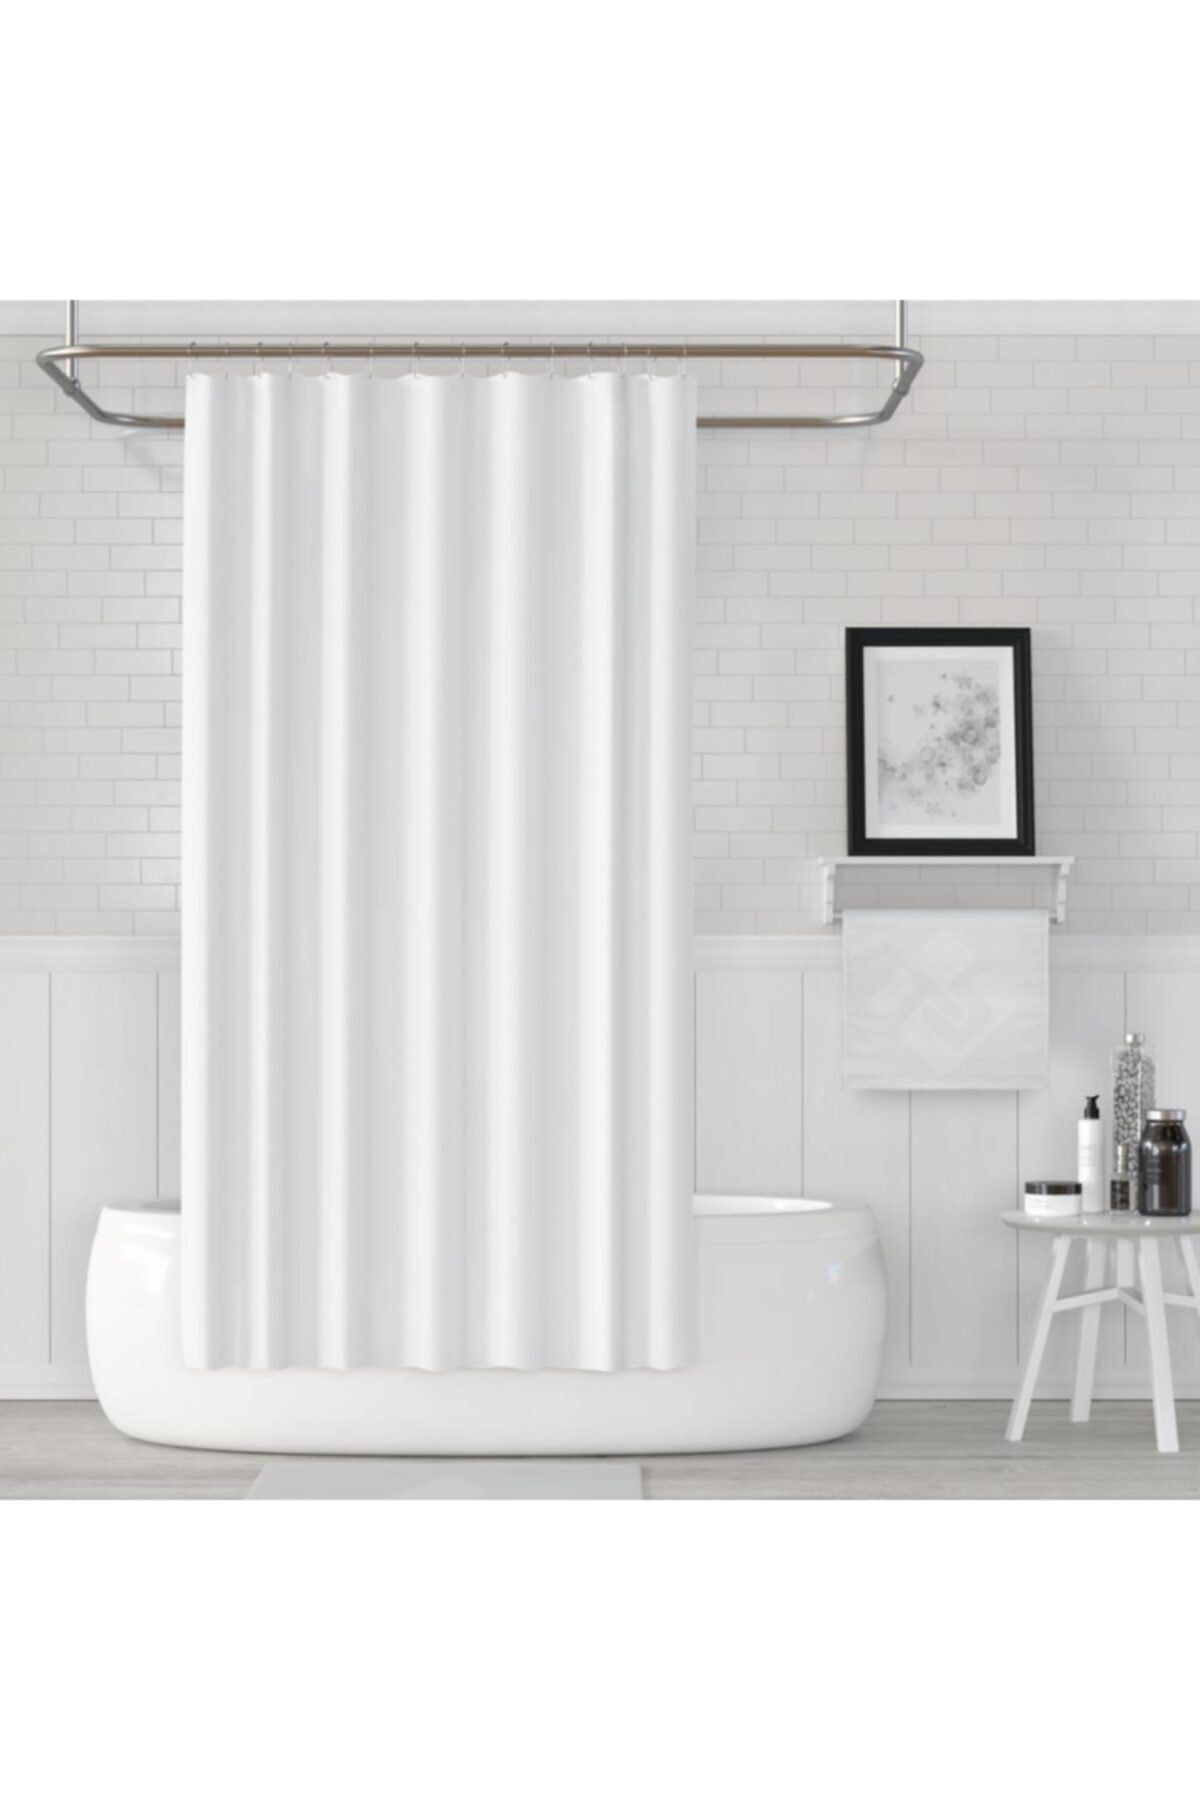 Prado Banyo Duş Perdesi Beyaz 180x200cm + Askı Hediyeli